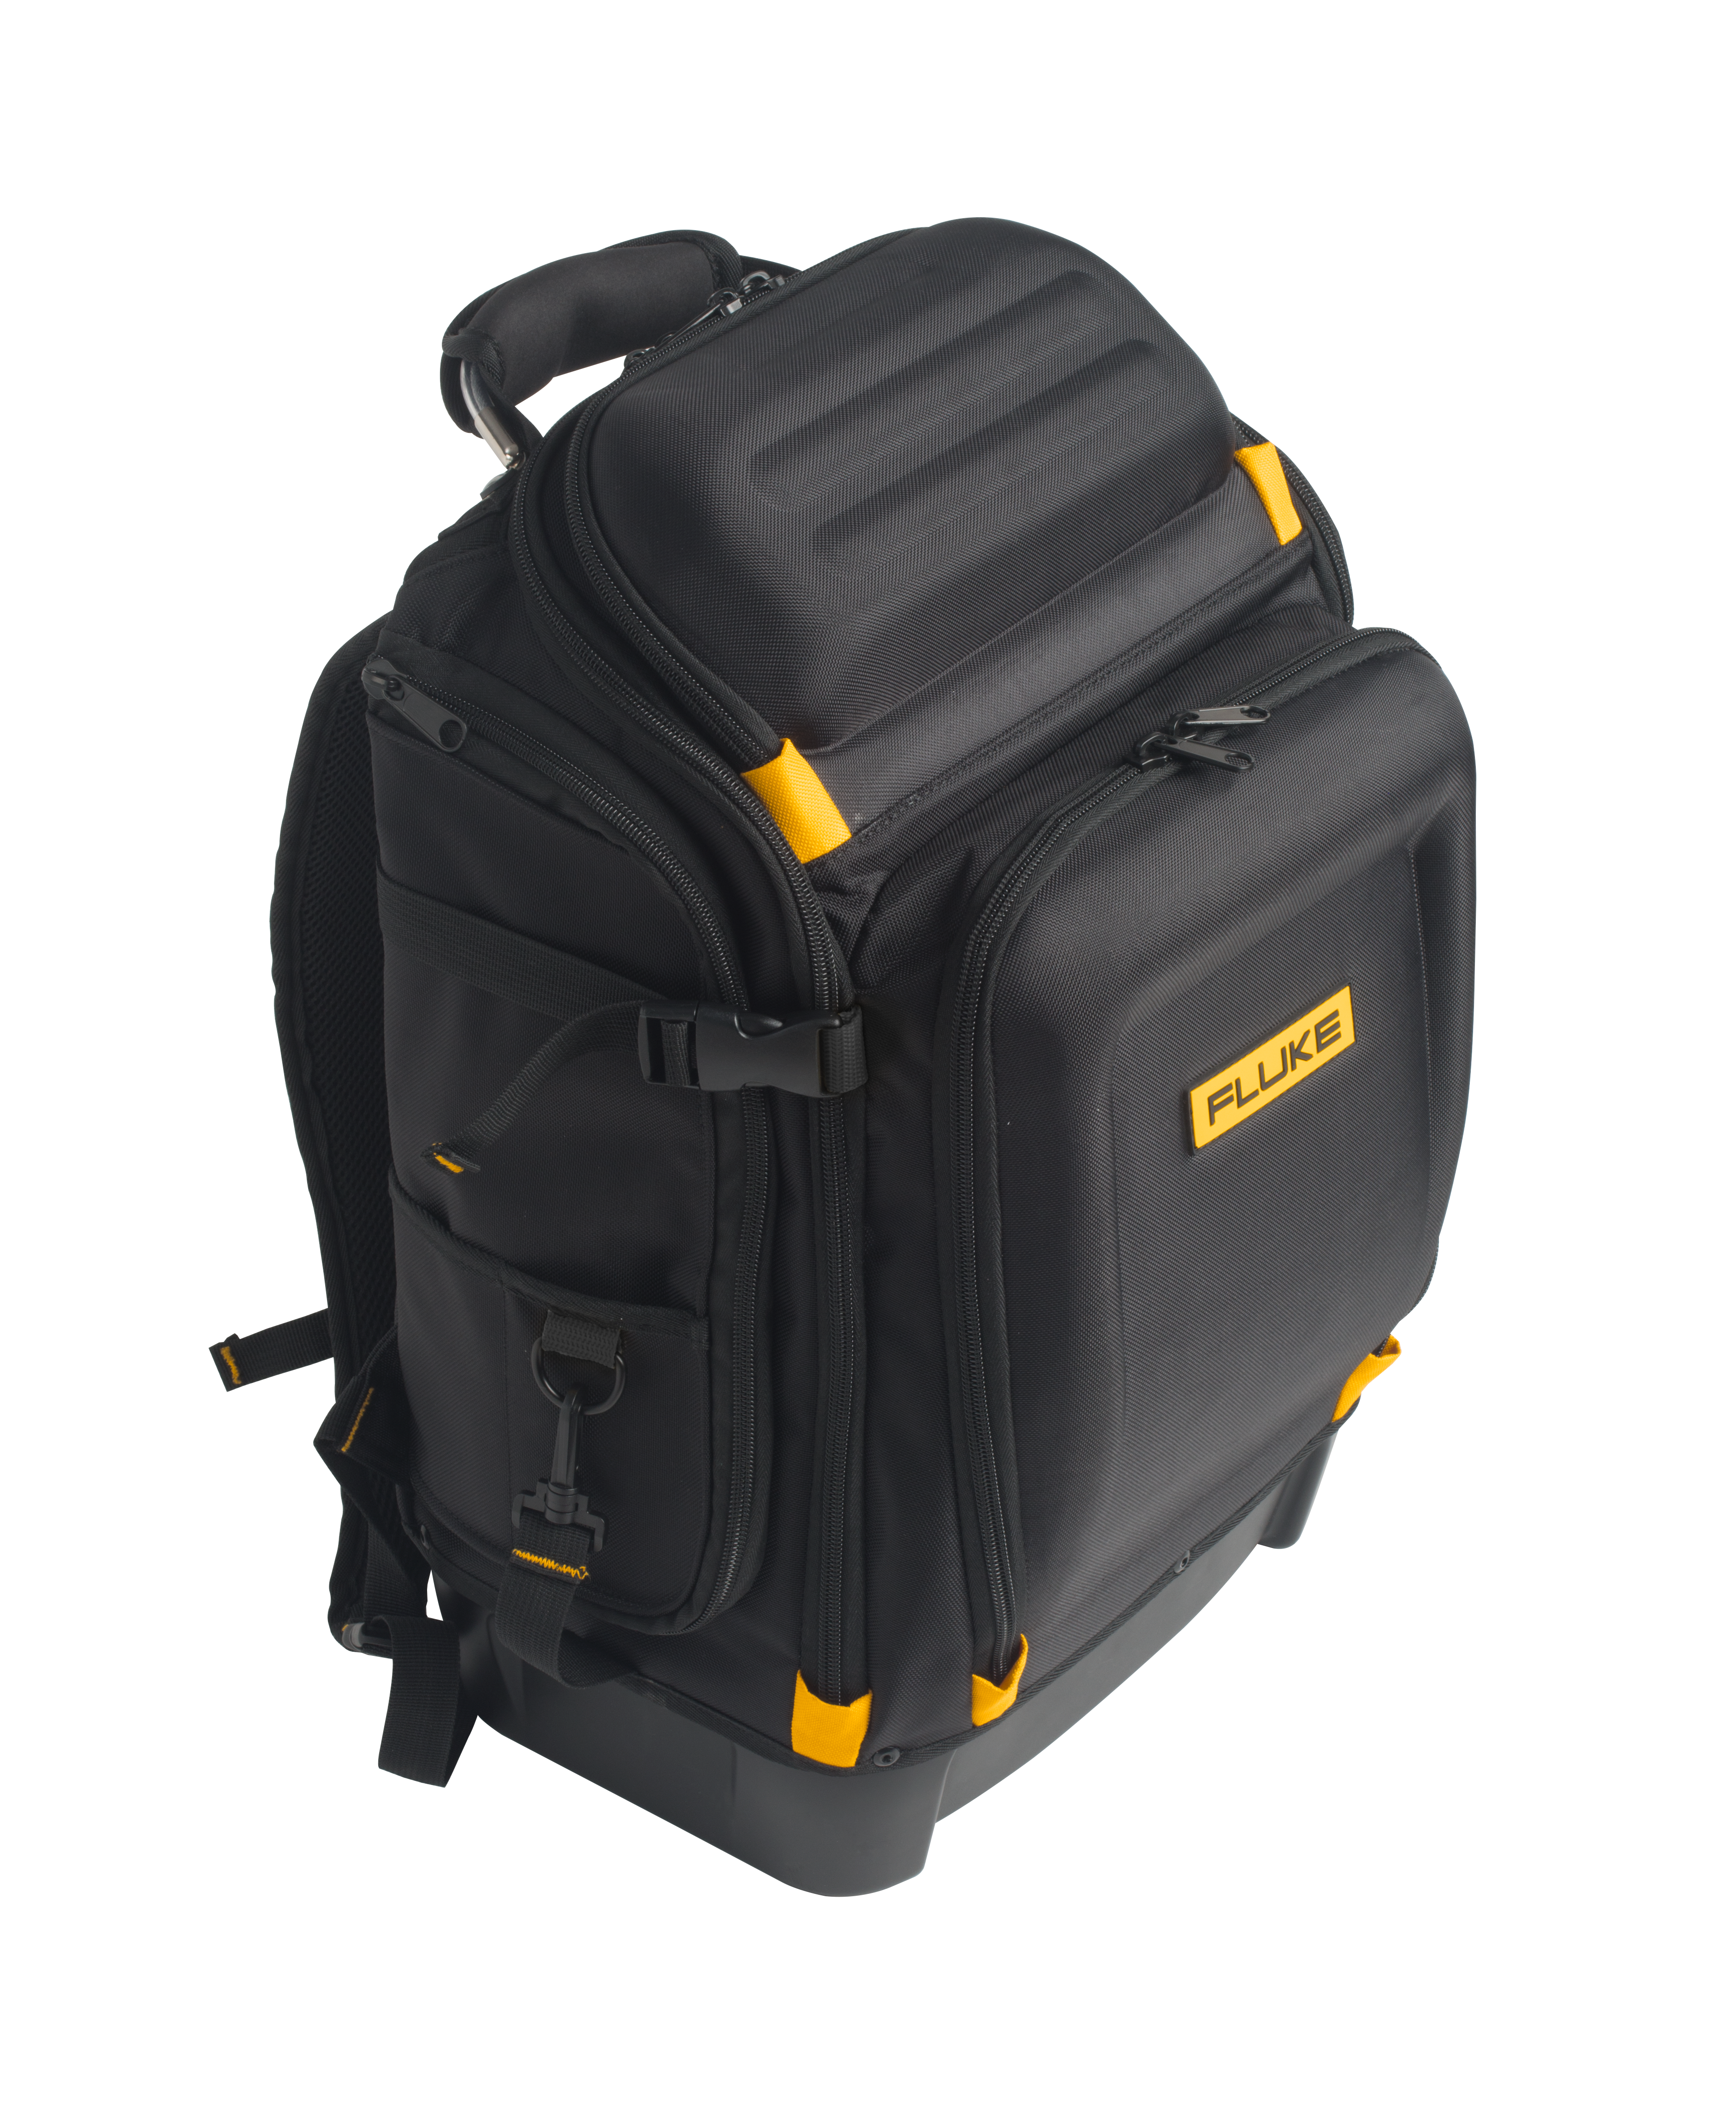 Fluke Pack30 Professional Tool Backpack